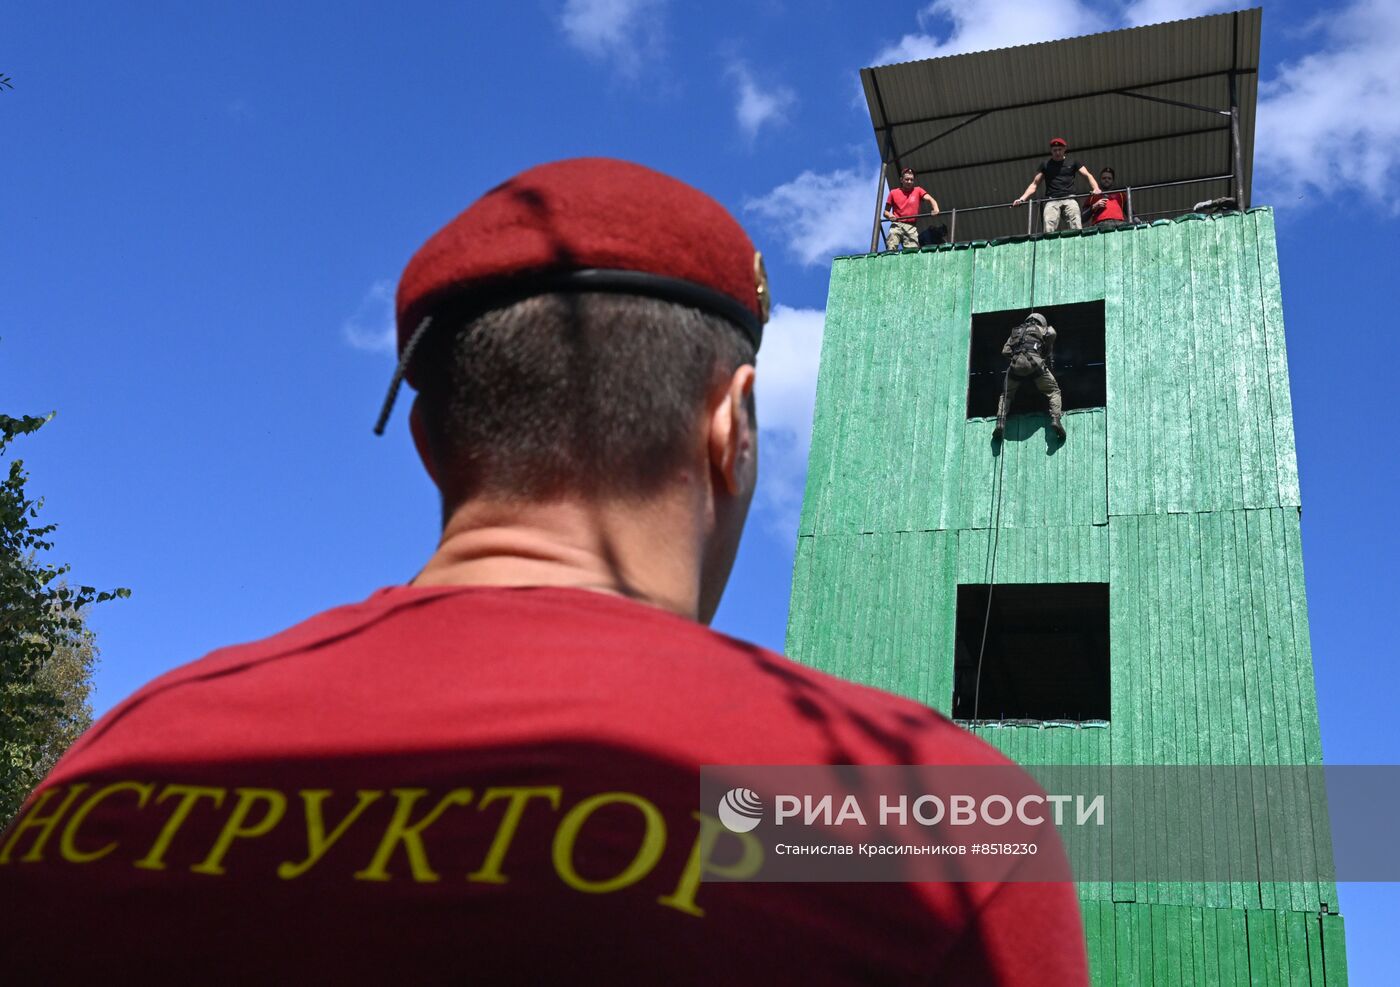 Всероссийские испытания на право ношения крапового берета среди сотрудников ФСИН